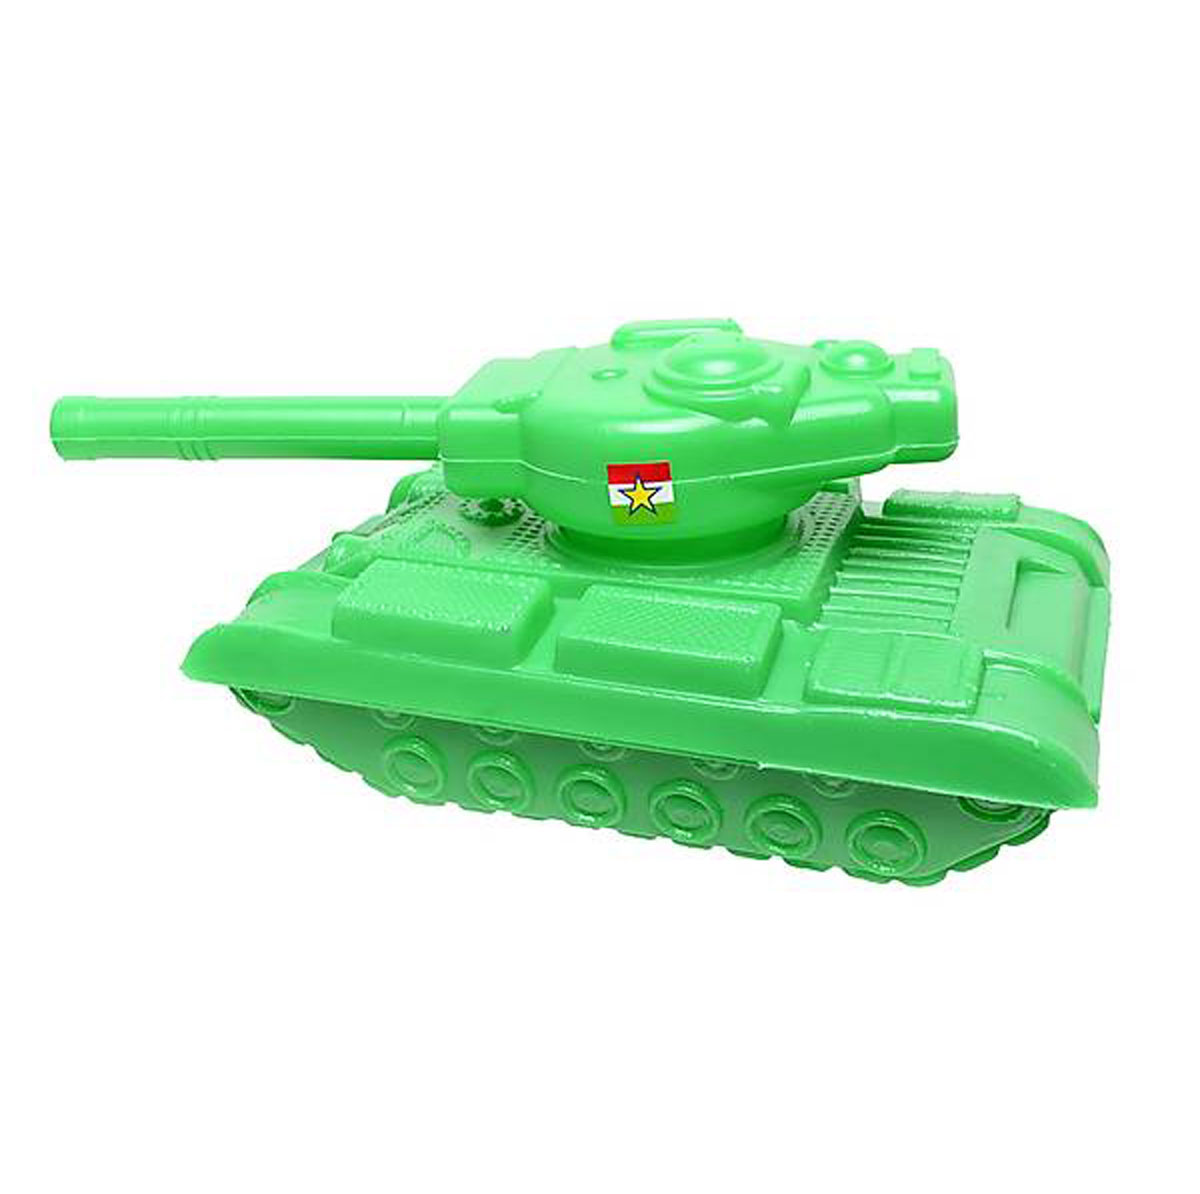 Іграшковий пластмасовий танк Л-024.